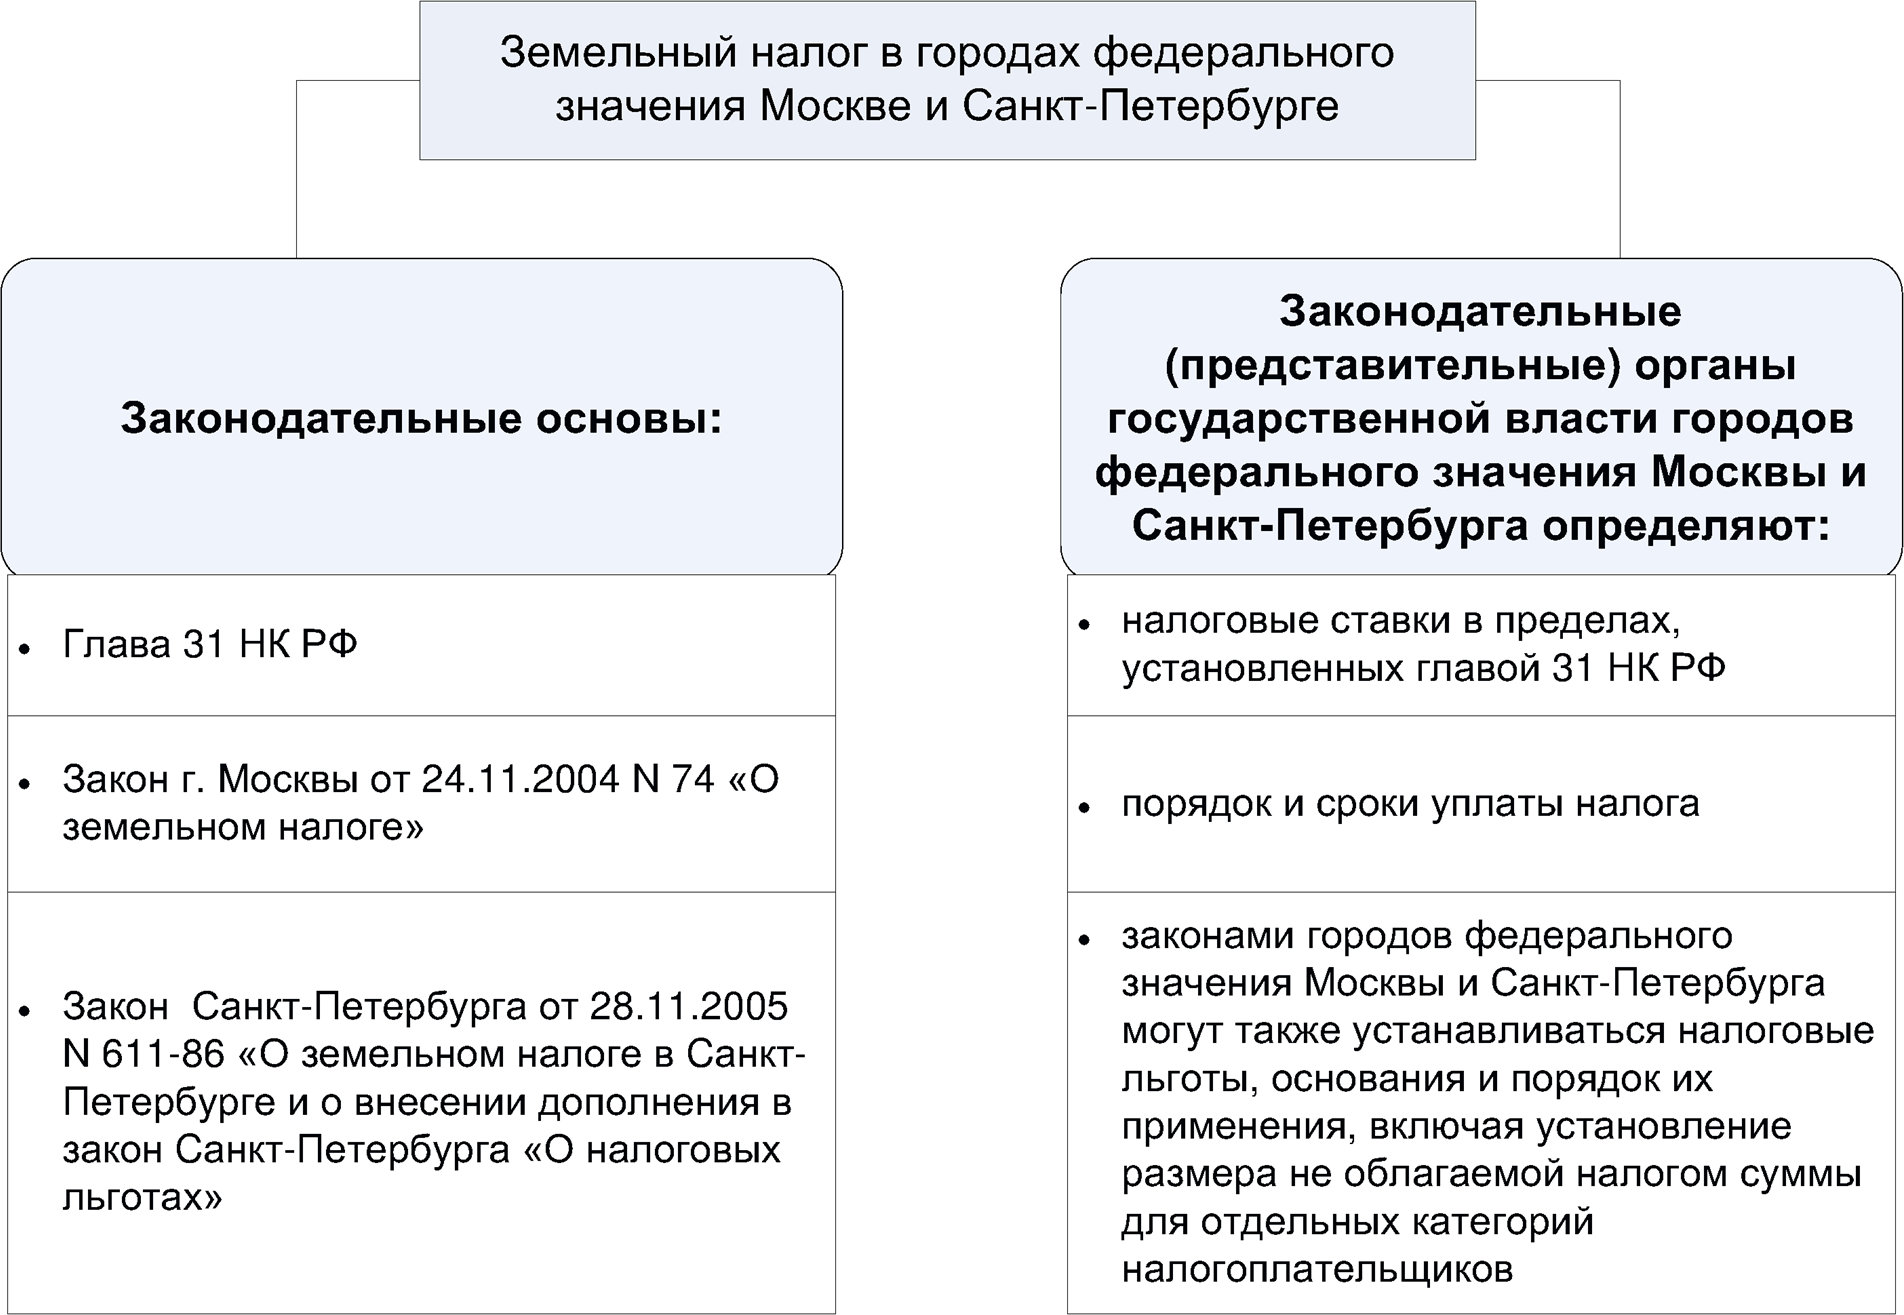 Земельный налог в городах федерального значения Москве и Санкт-Петербурге